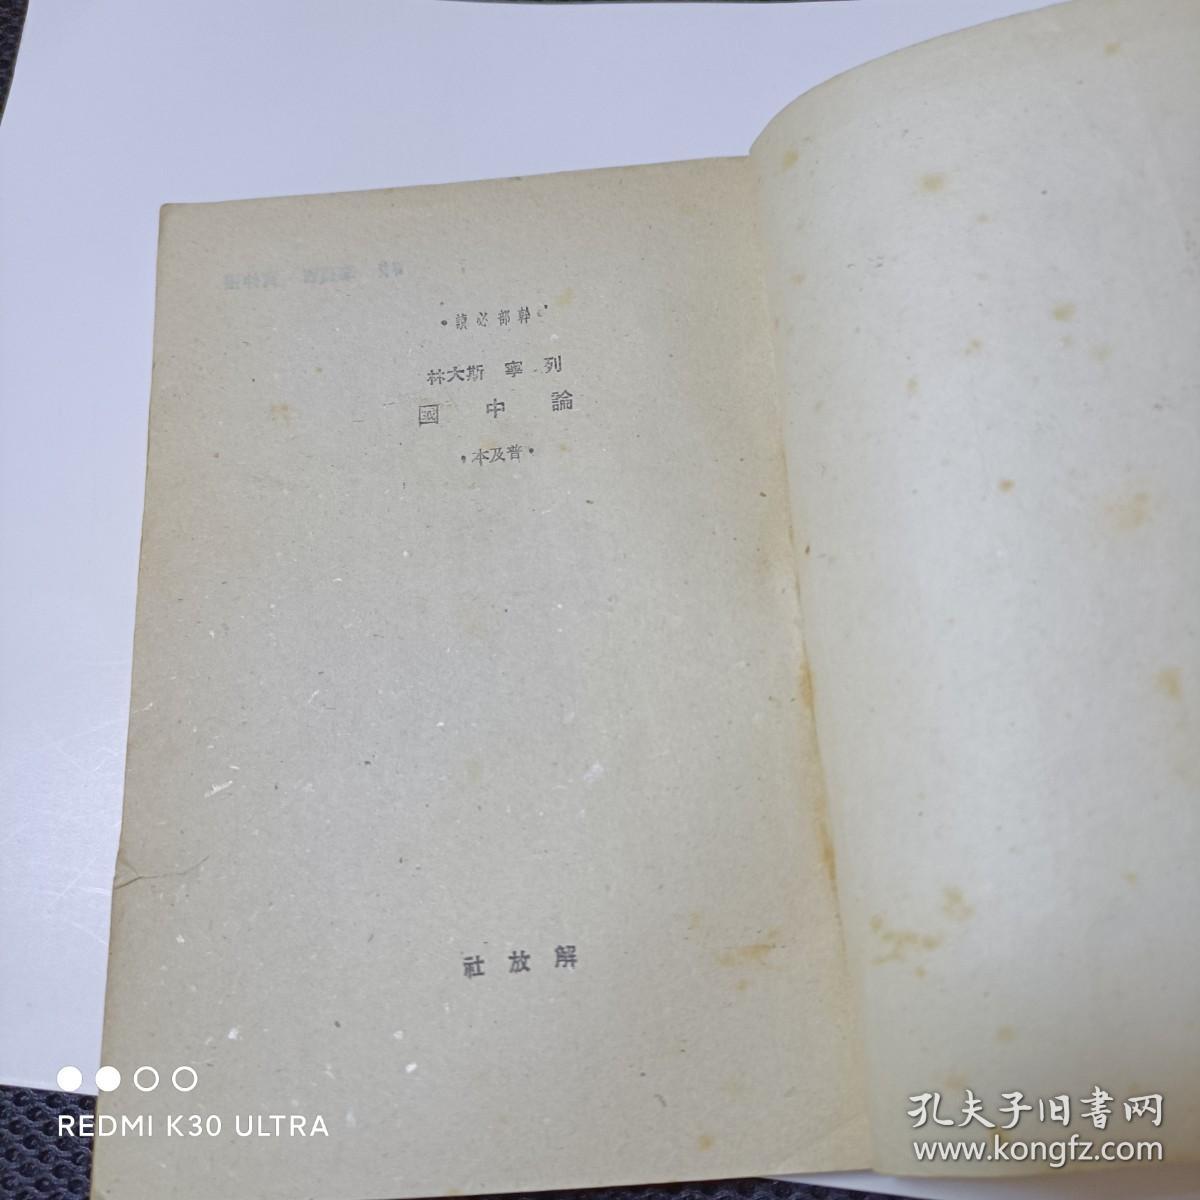 《列宁斯大林论中国》一本建国初期干部必读书籍。初版初印，带非常漂亮的金黄色“七一纪念”原目录书签